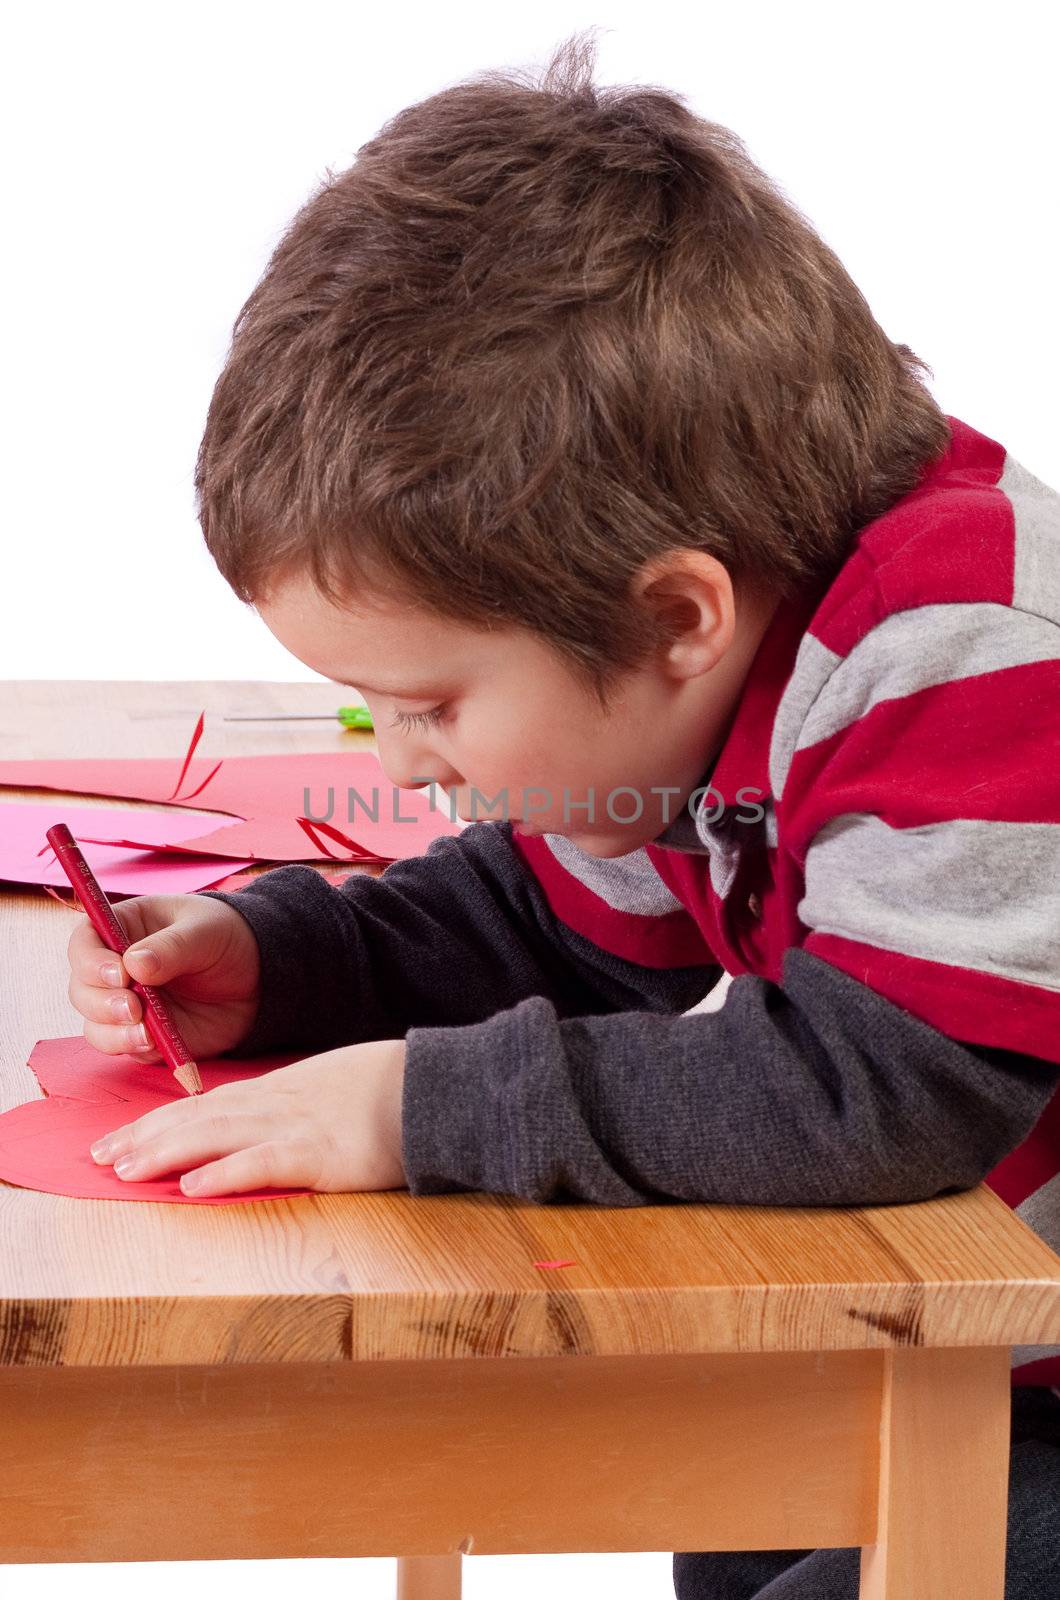 Cute little children drawing on cardboard hearts